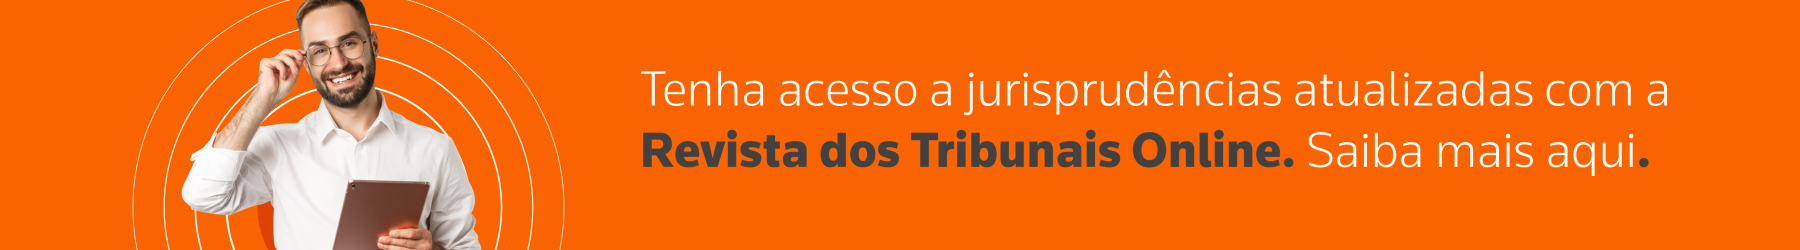 Tenha acesso a jurisprudências atualizadas com a Revista dos Tribunais Online. Saiba mais aqui.